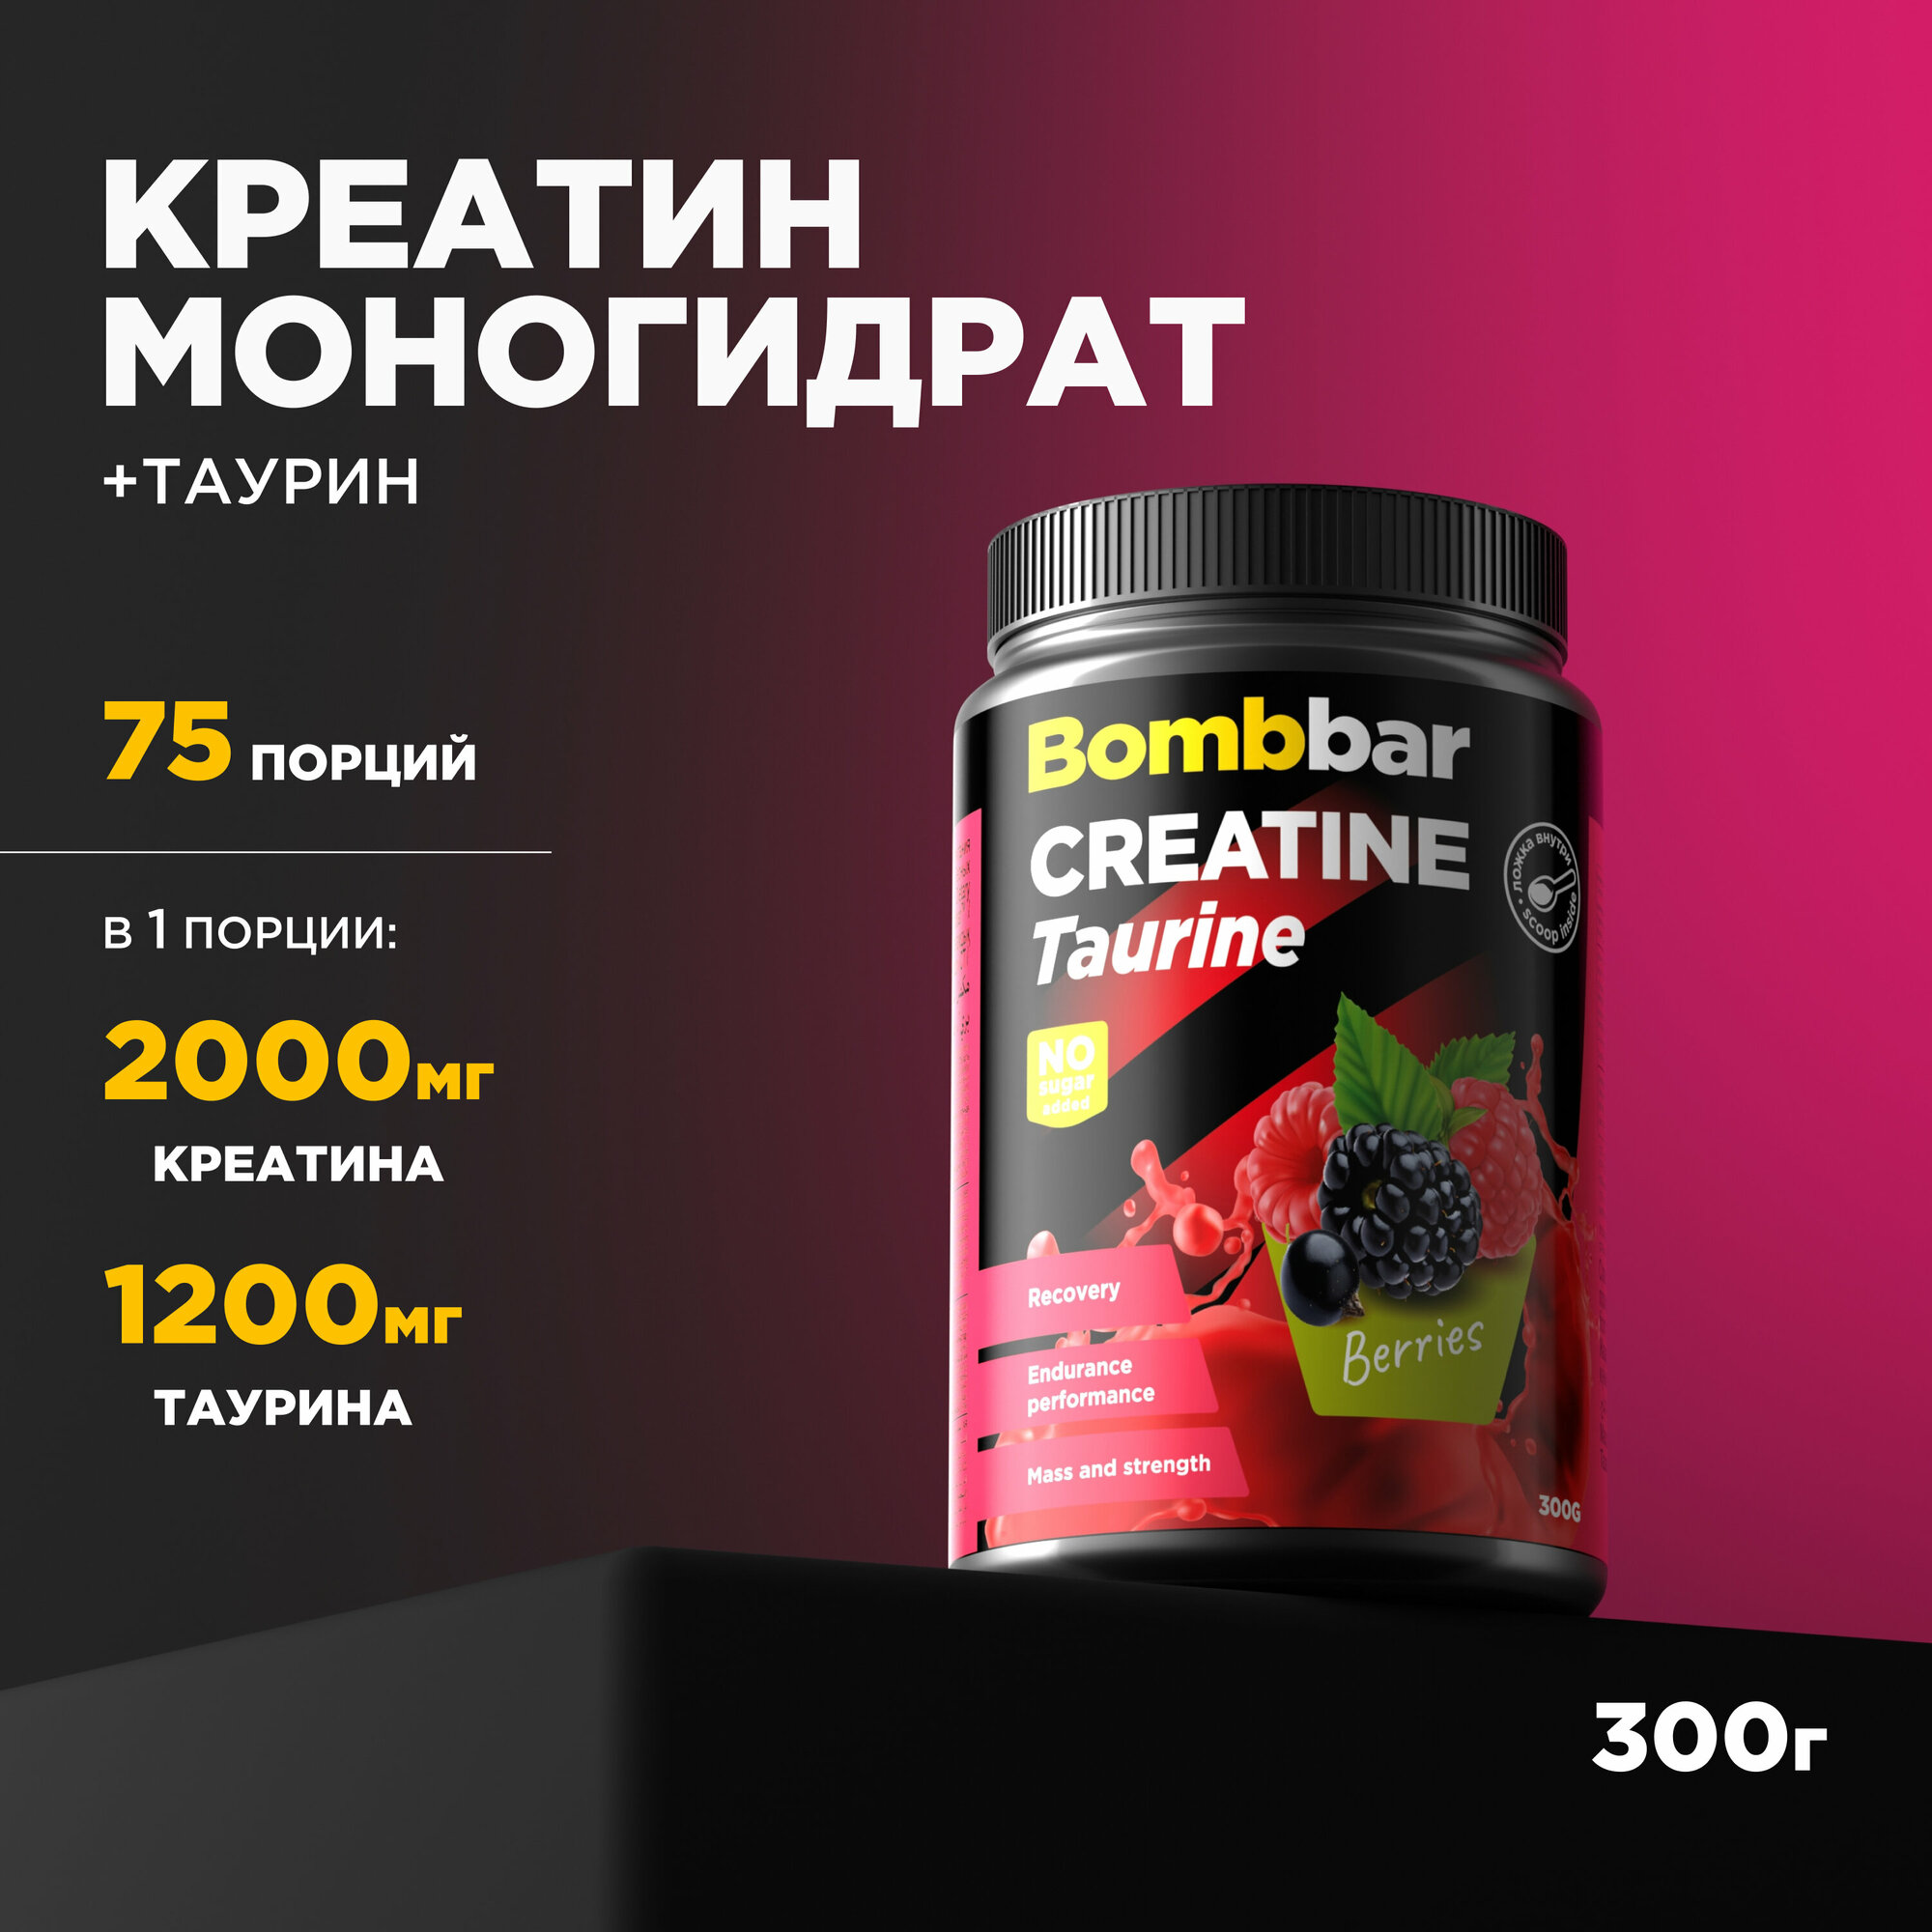 Creatine Taurine Bombbar Pro / Коктейль Креатин + Таурин, Лесные ягоды (300г)